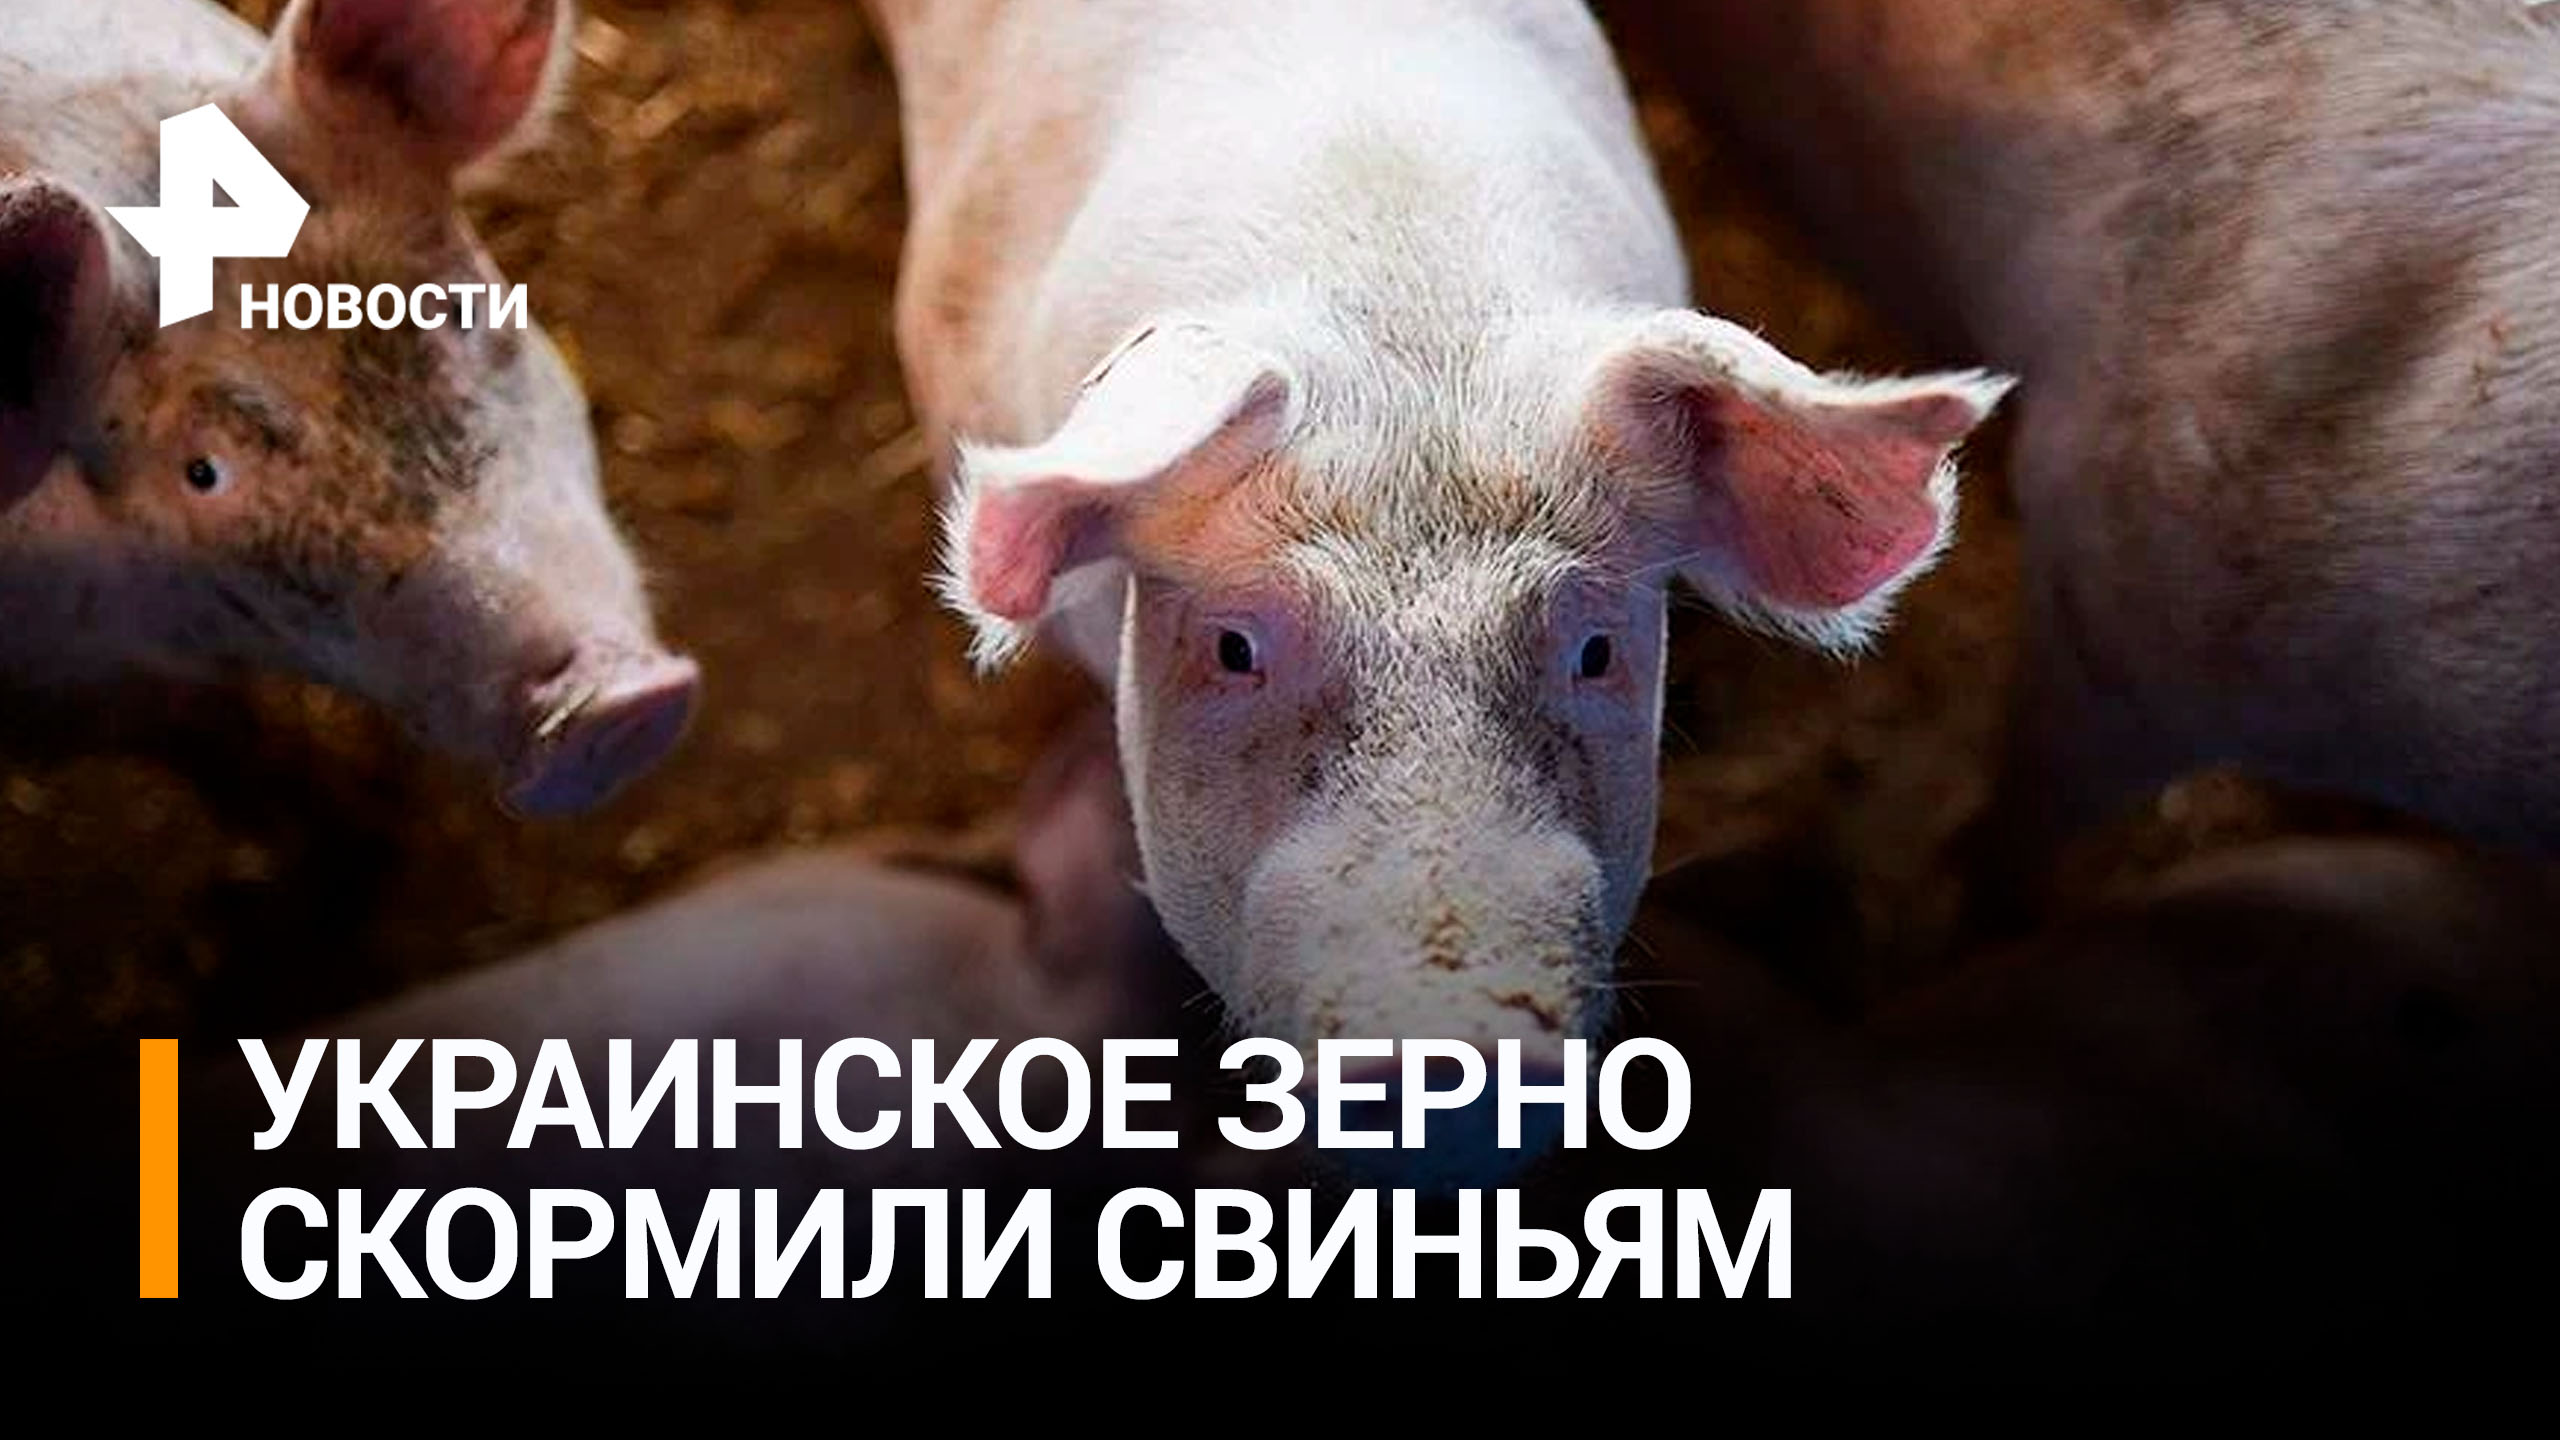 Украинское зерно вместо поставок в Африку скормили свиньям / РЕН Новости